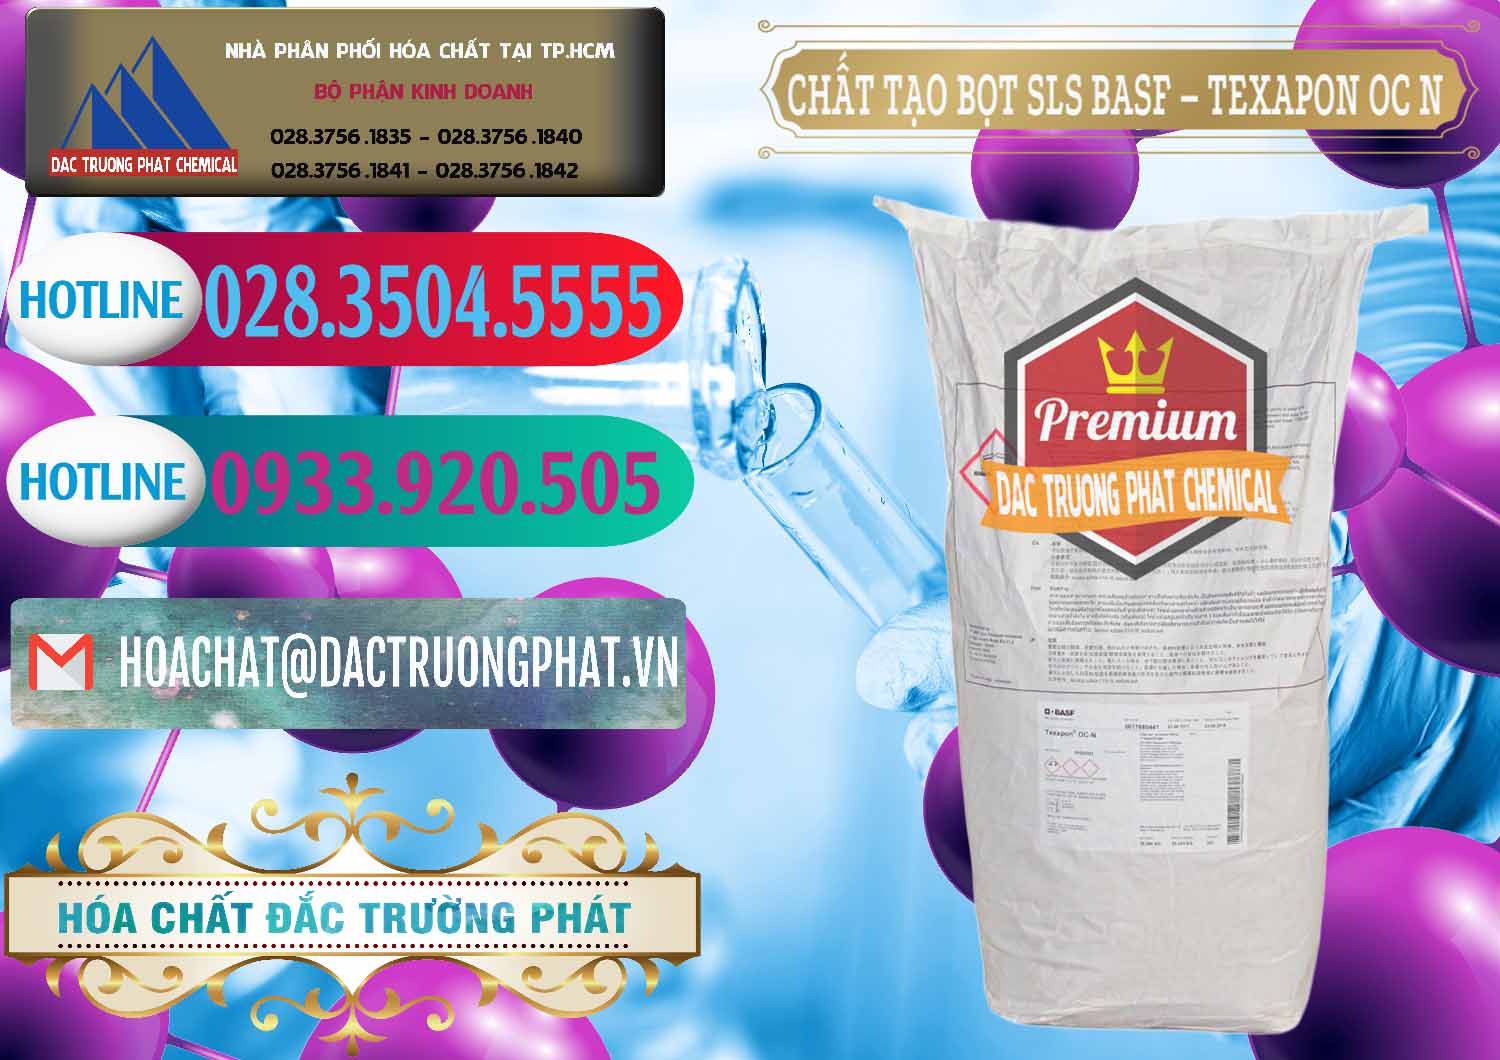 Cty bán và phân phối Chất Tạo Bọt SLS - Sodium Lauryl Sulfate BASF Texapon OC N - 0049 - Nhà phân phối - cung cấp hóa chất tại TP.HCM - truongphat.vn